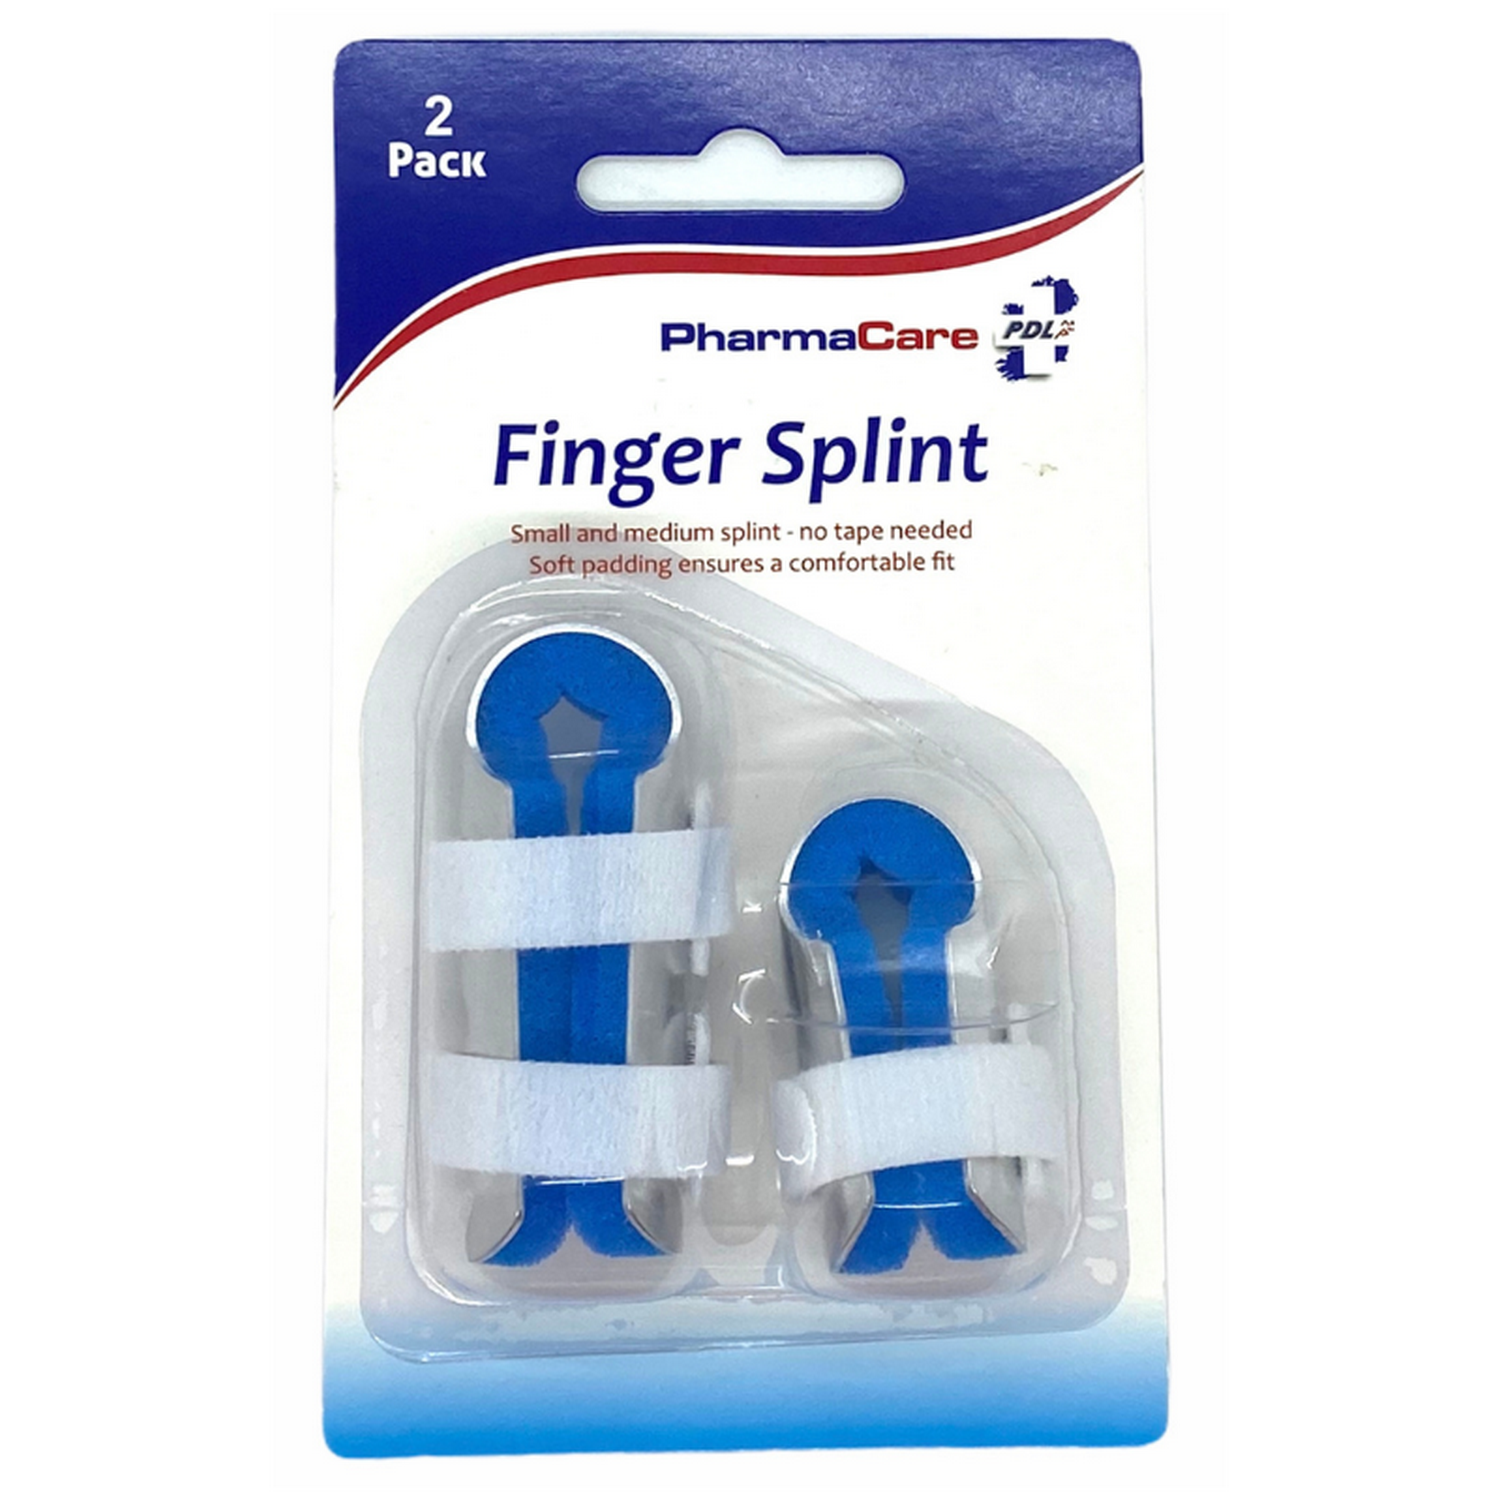 Pharmacare Finger Splint Double Pack